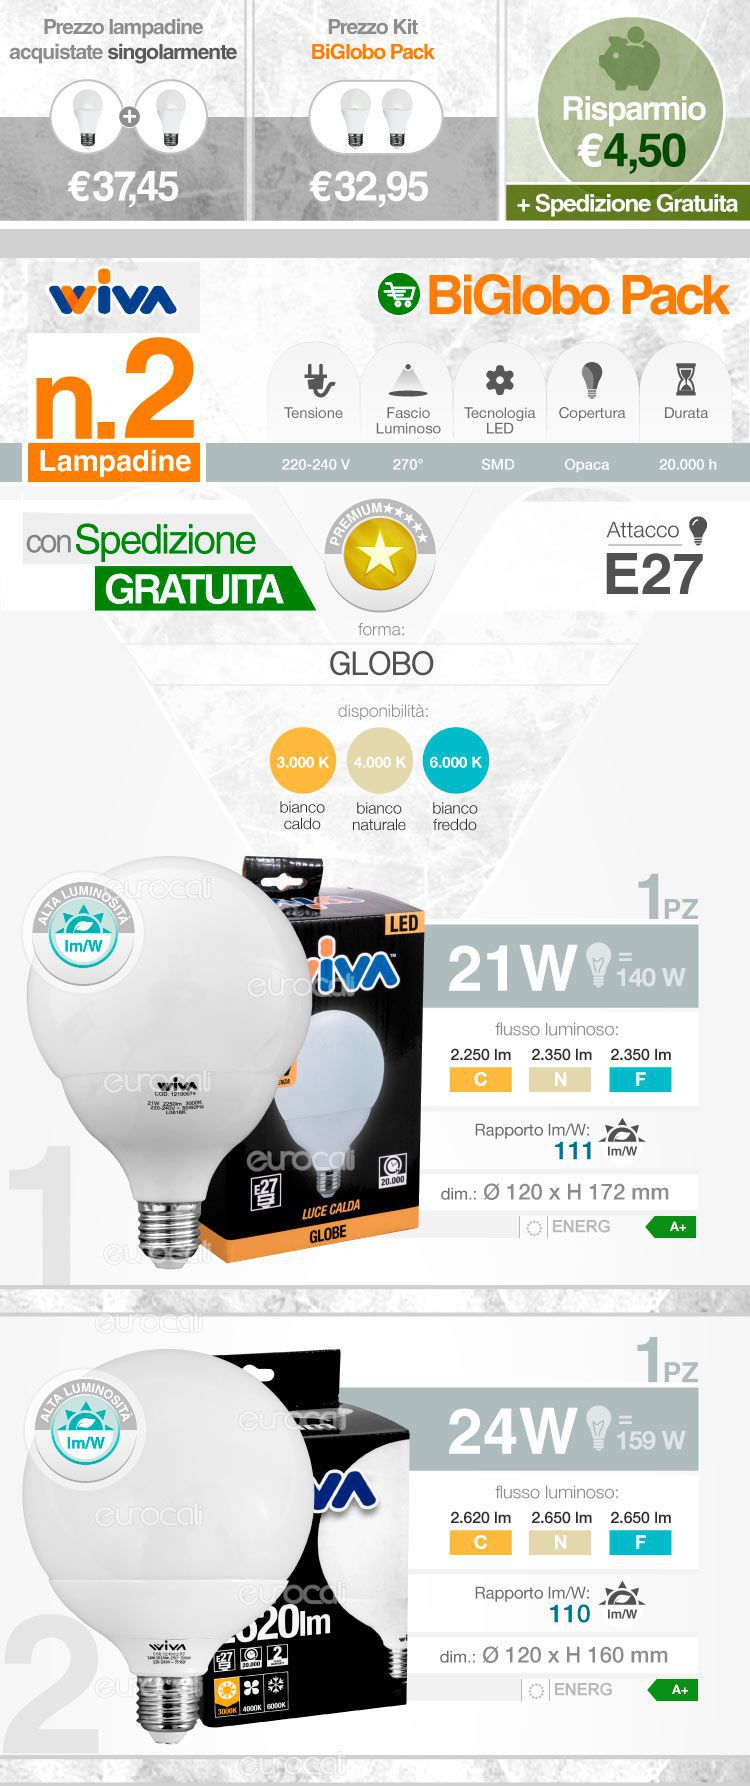 Wiva Kit Eurocali LED